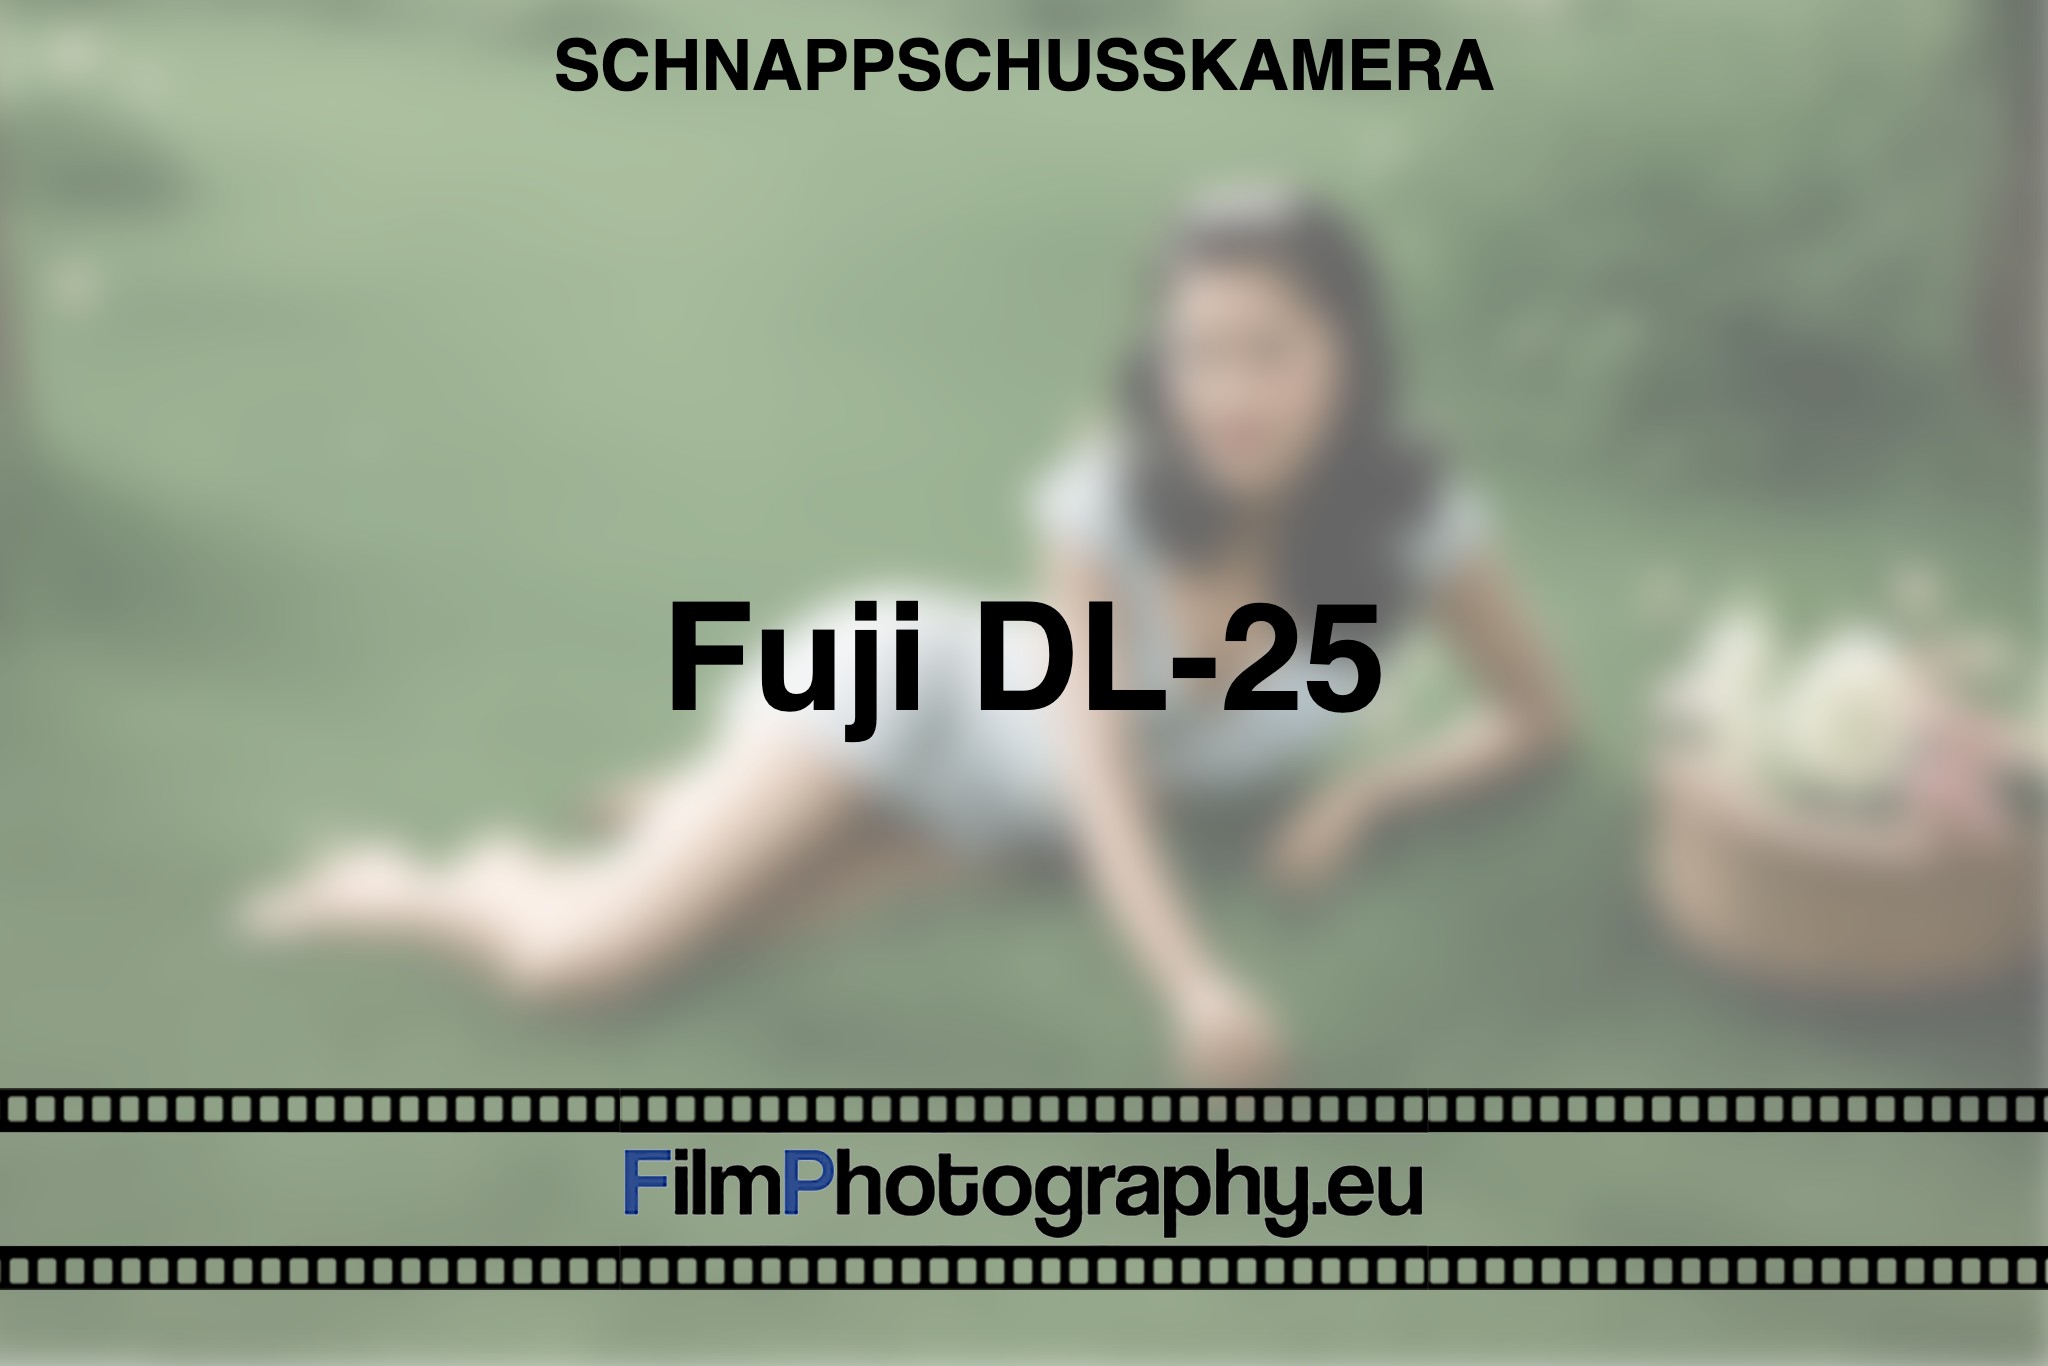 fuji-dl-25-schnappschusskamera-bnv